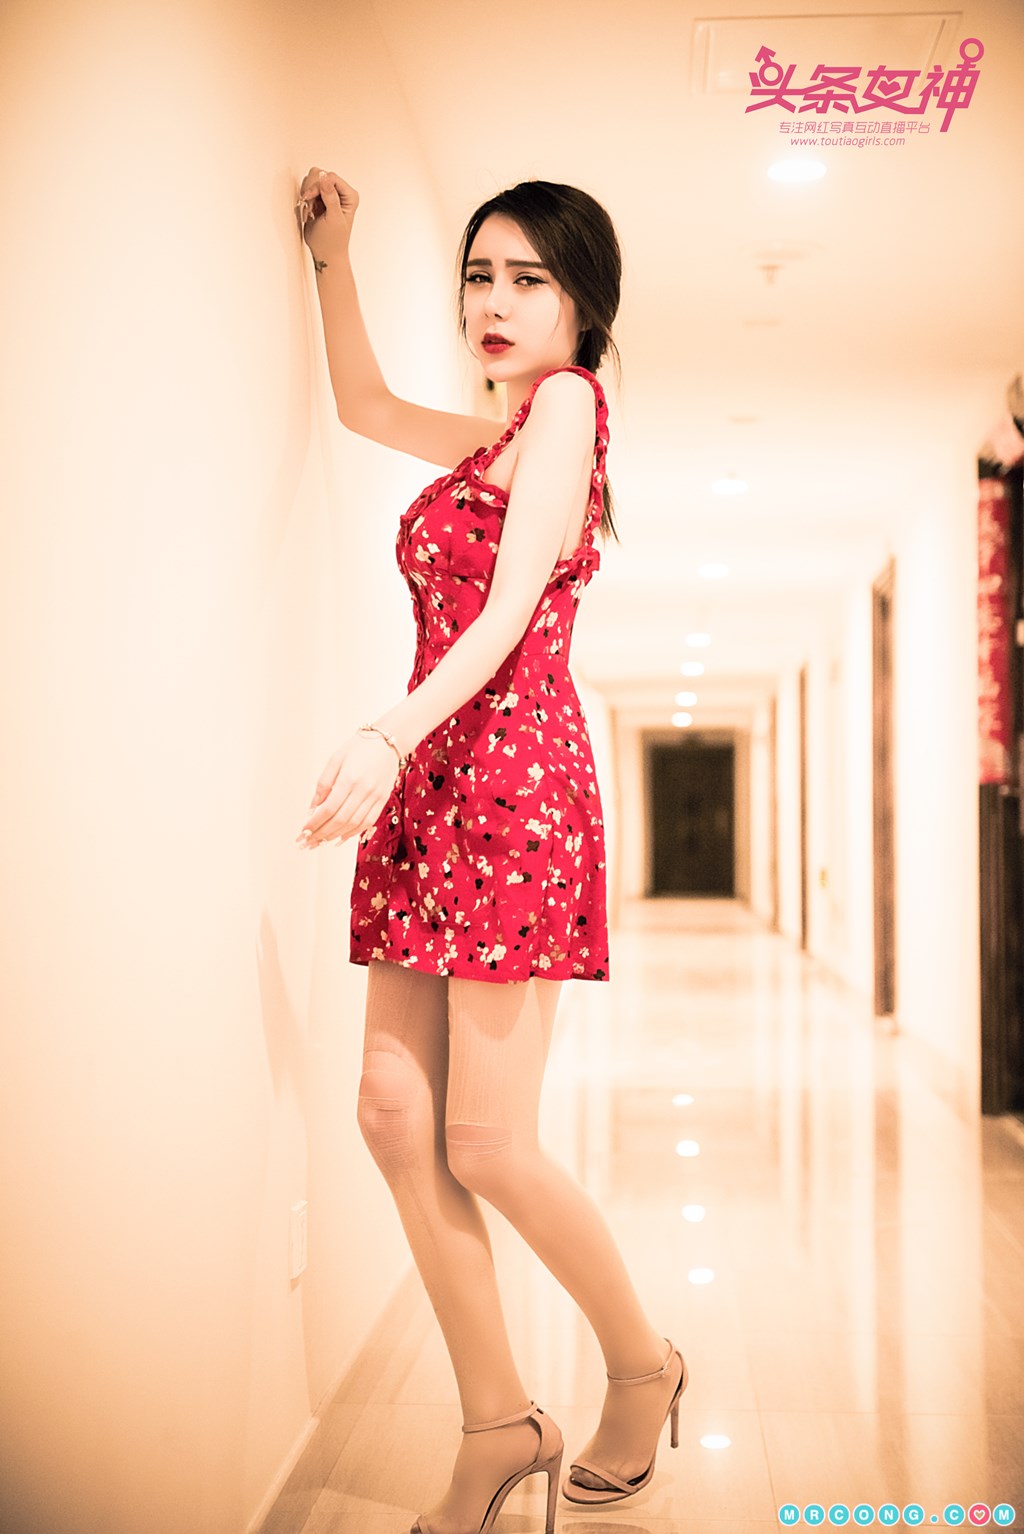 TouTiao 2018-05-03: Model Liu Bo Qi (刘博启) (41 photos) photo 1-19